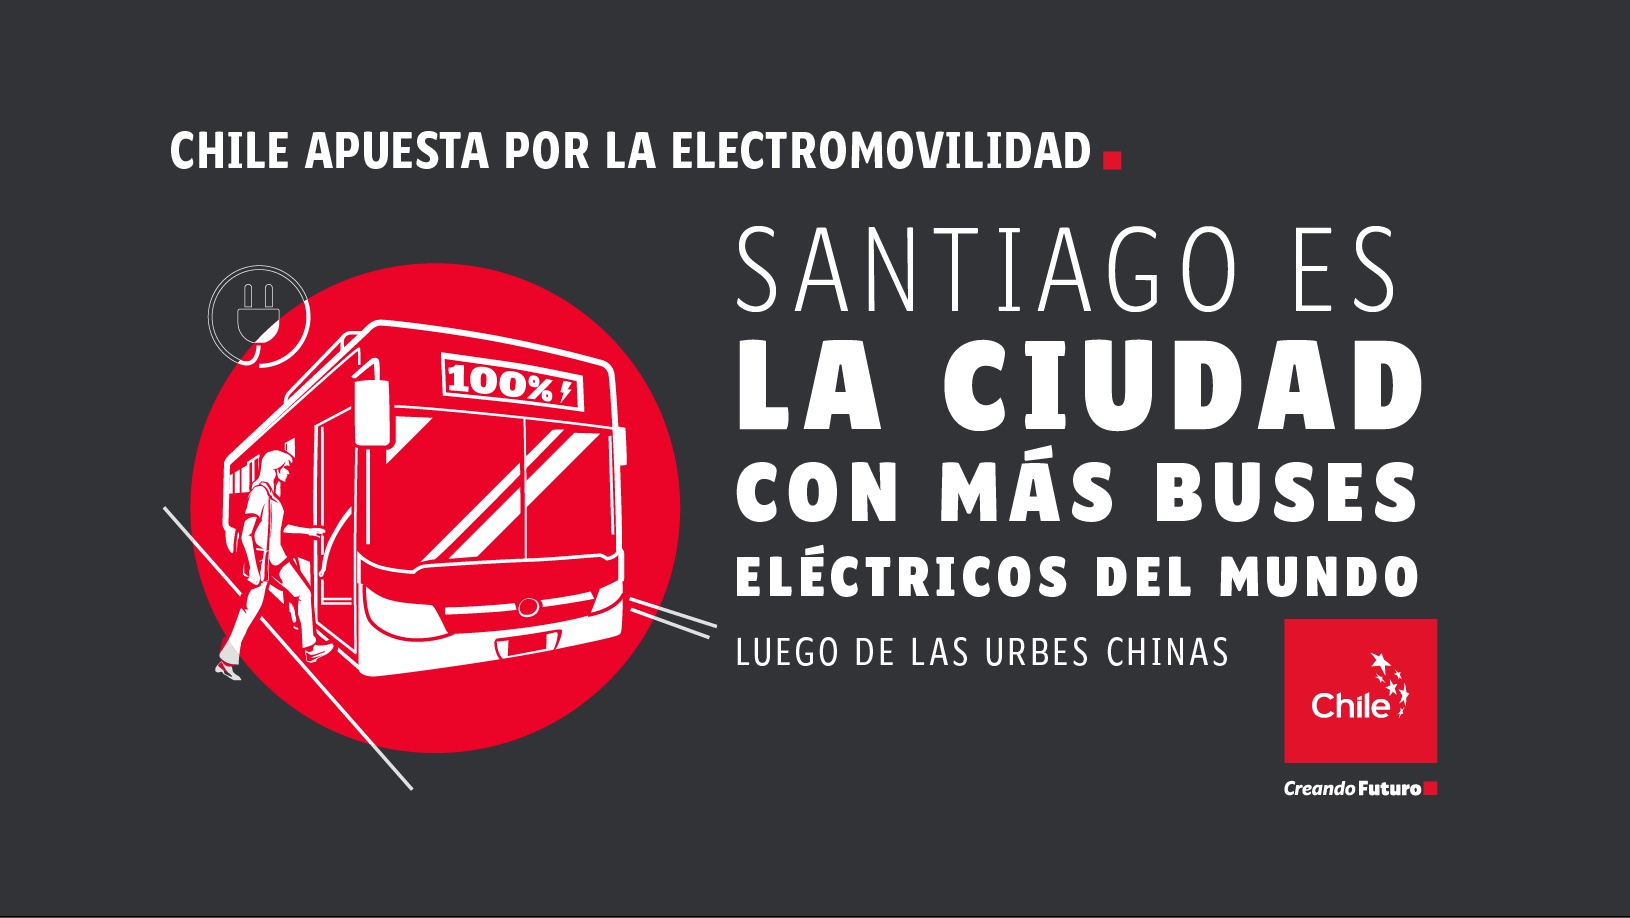 Electromovilidad / Electromobility / Eletromobilidade | Marca Chile | Toolkit